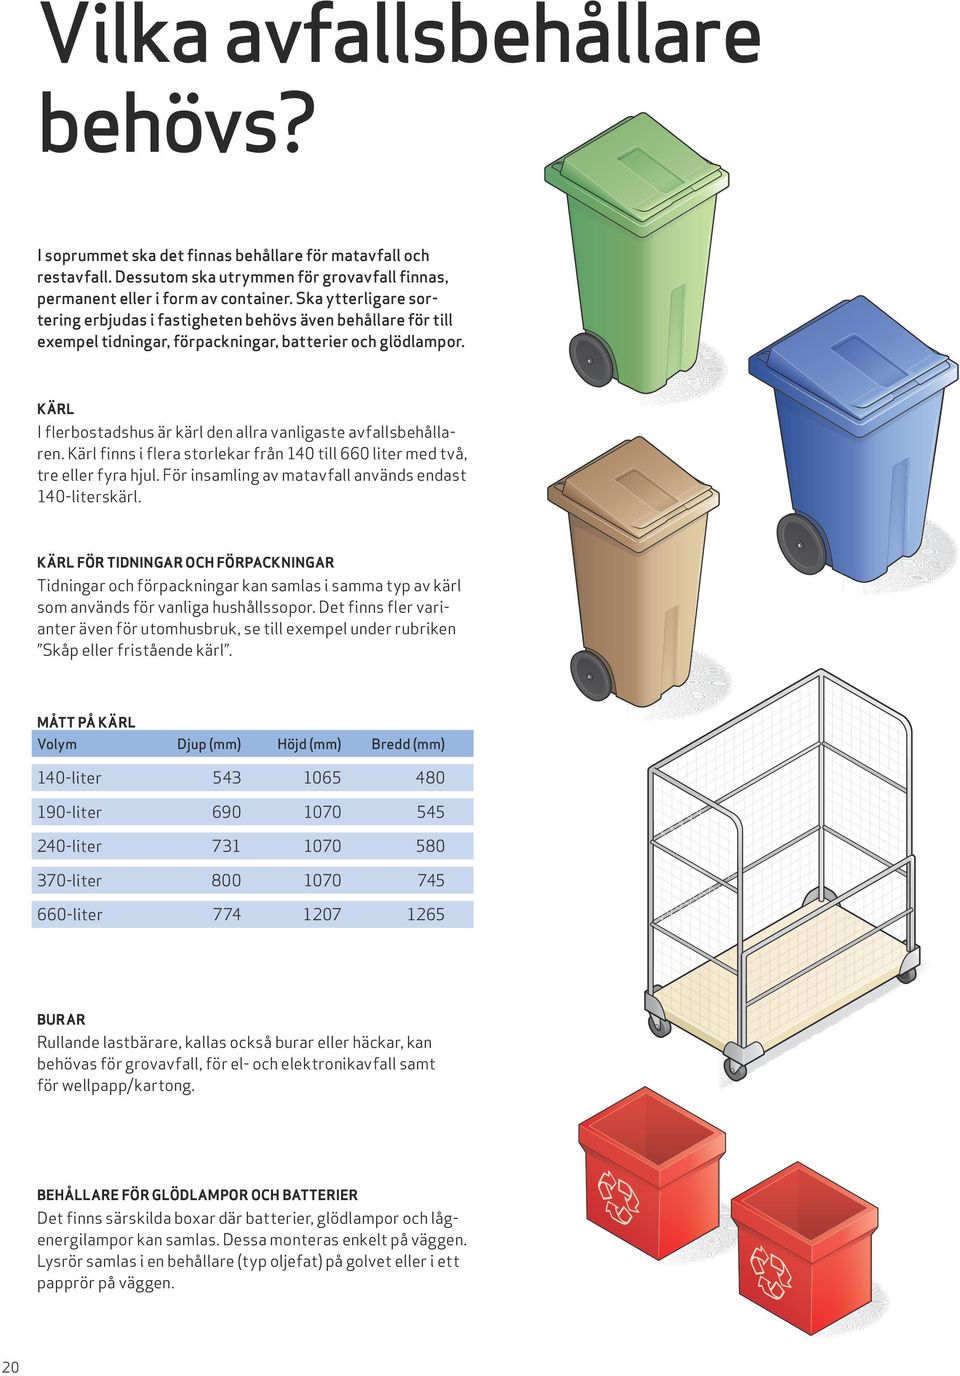 KÄRL I flerbostadshus är kärl den allra vanligaste avfallsbehållaren. Kärl finns i flera storlekar från 140 till 660 liter med två, tre eller fyra hjul.